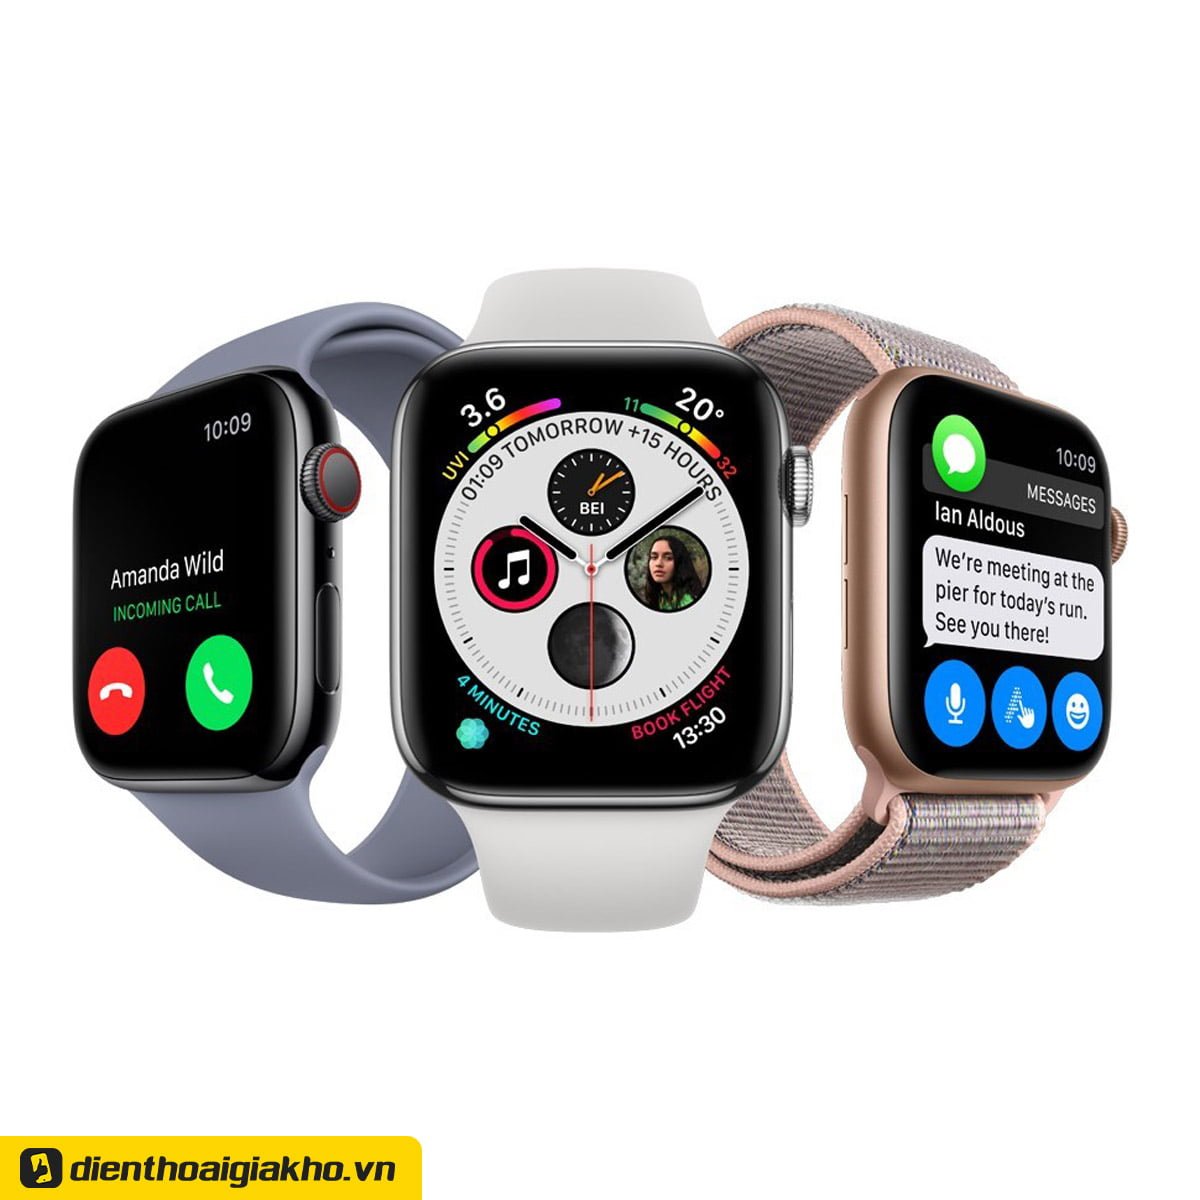 Điều kiện thu cũ đổi mới Apple Watch tại Điện Thoại Giá Kho